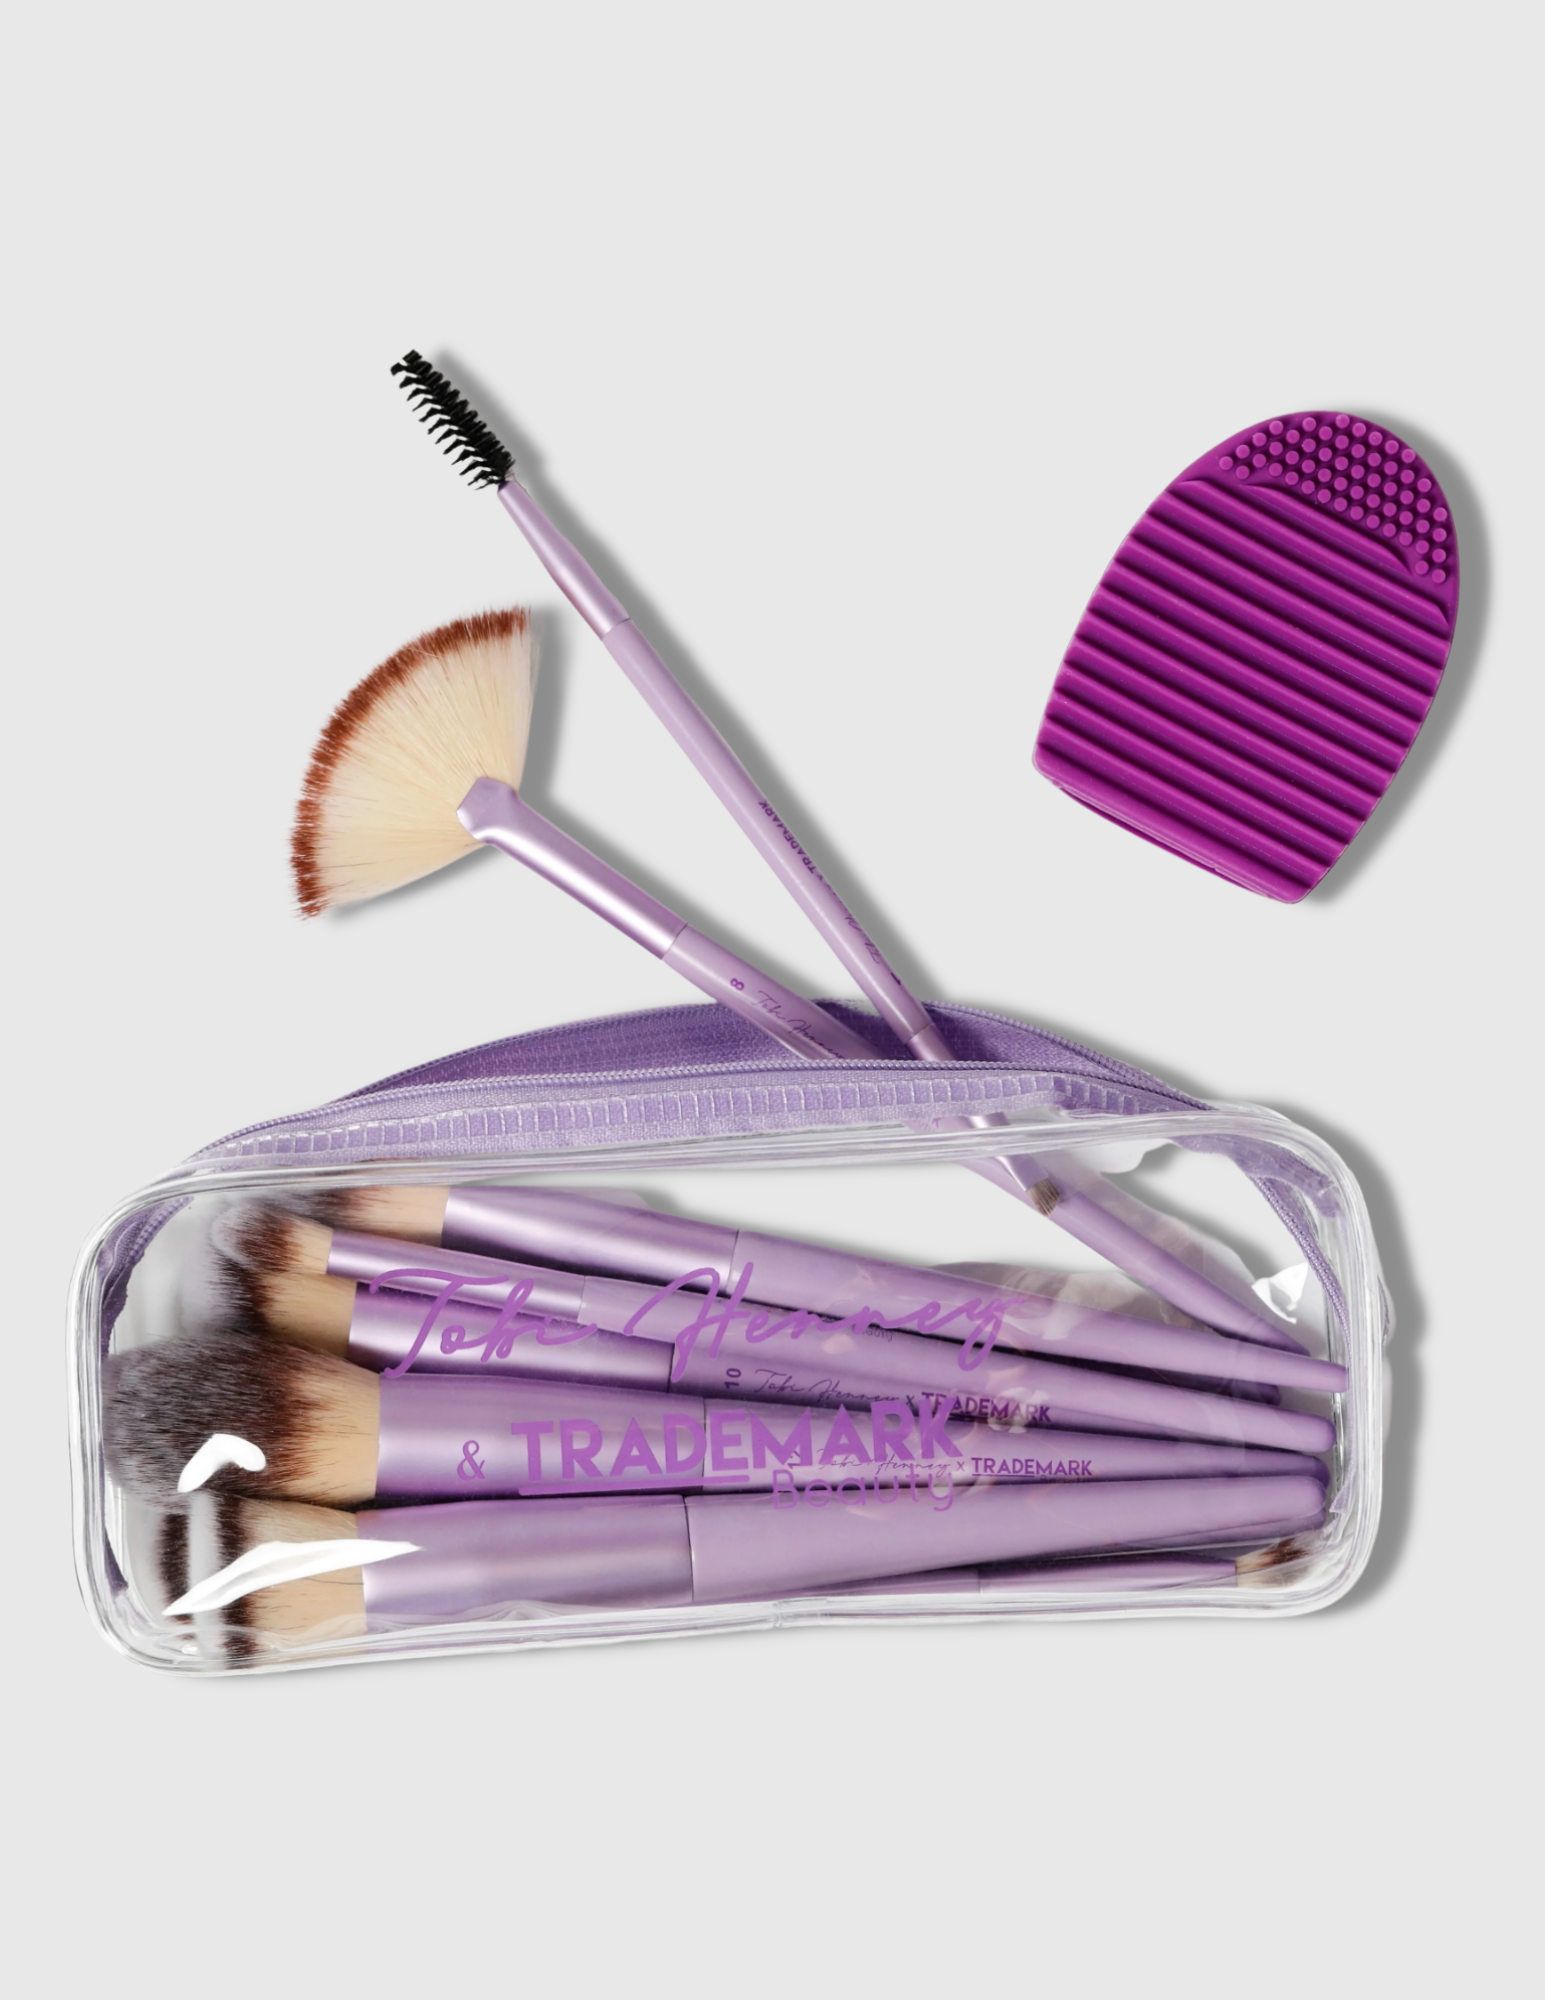 Contour Makeup Brush - #10 - Trademark Beauty